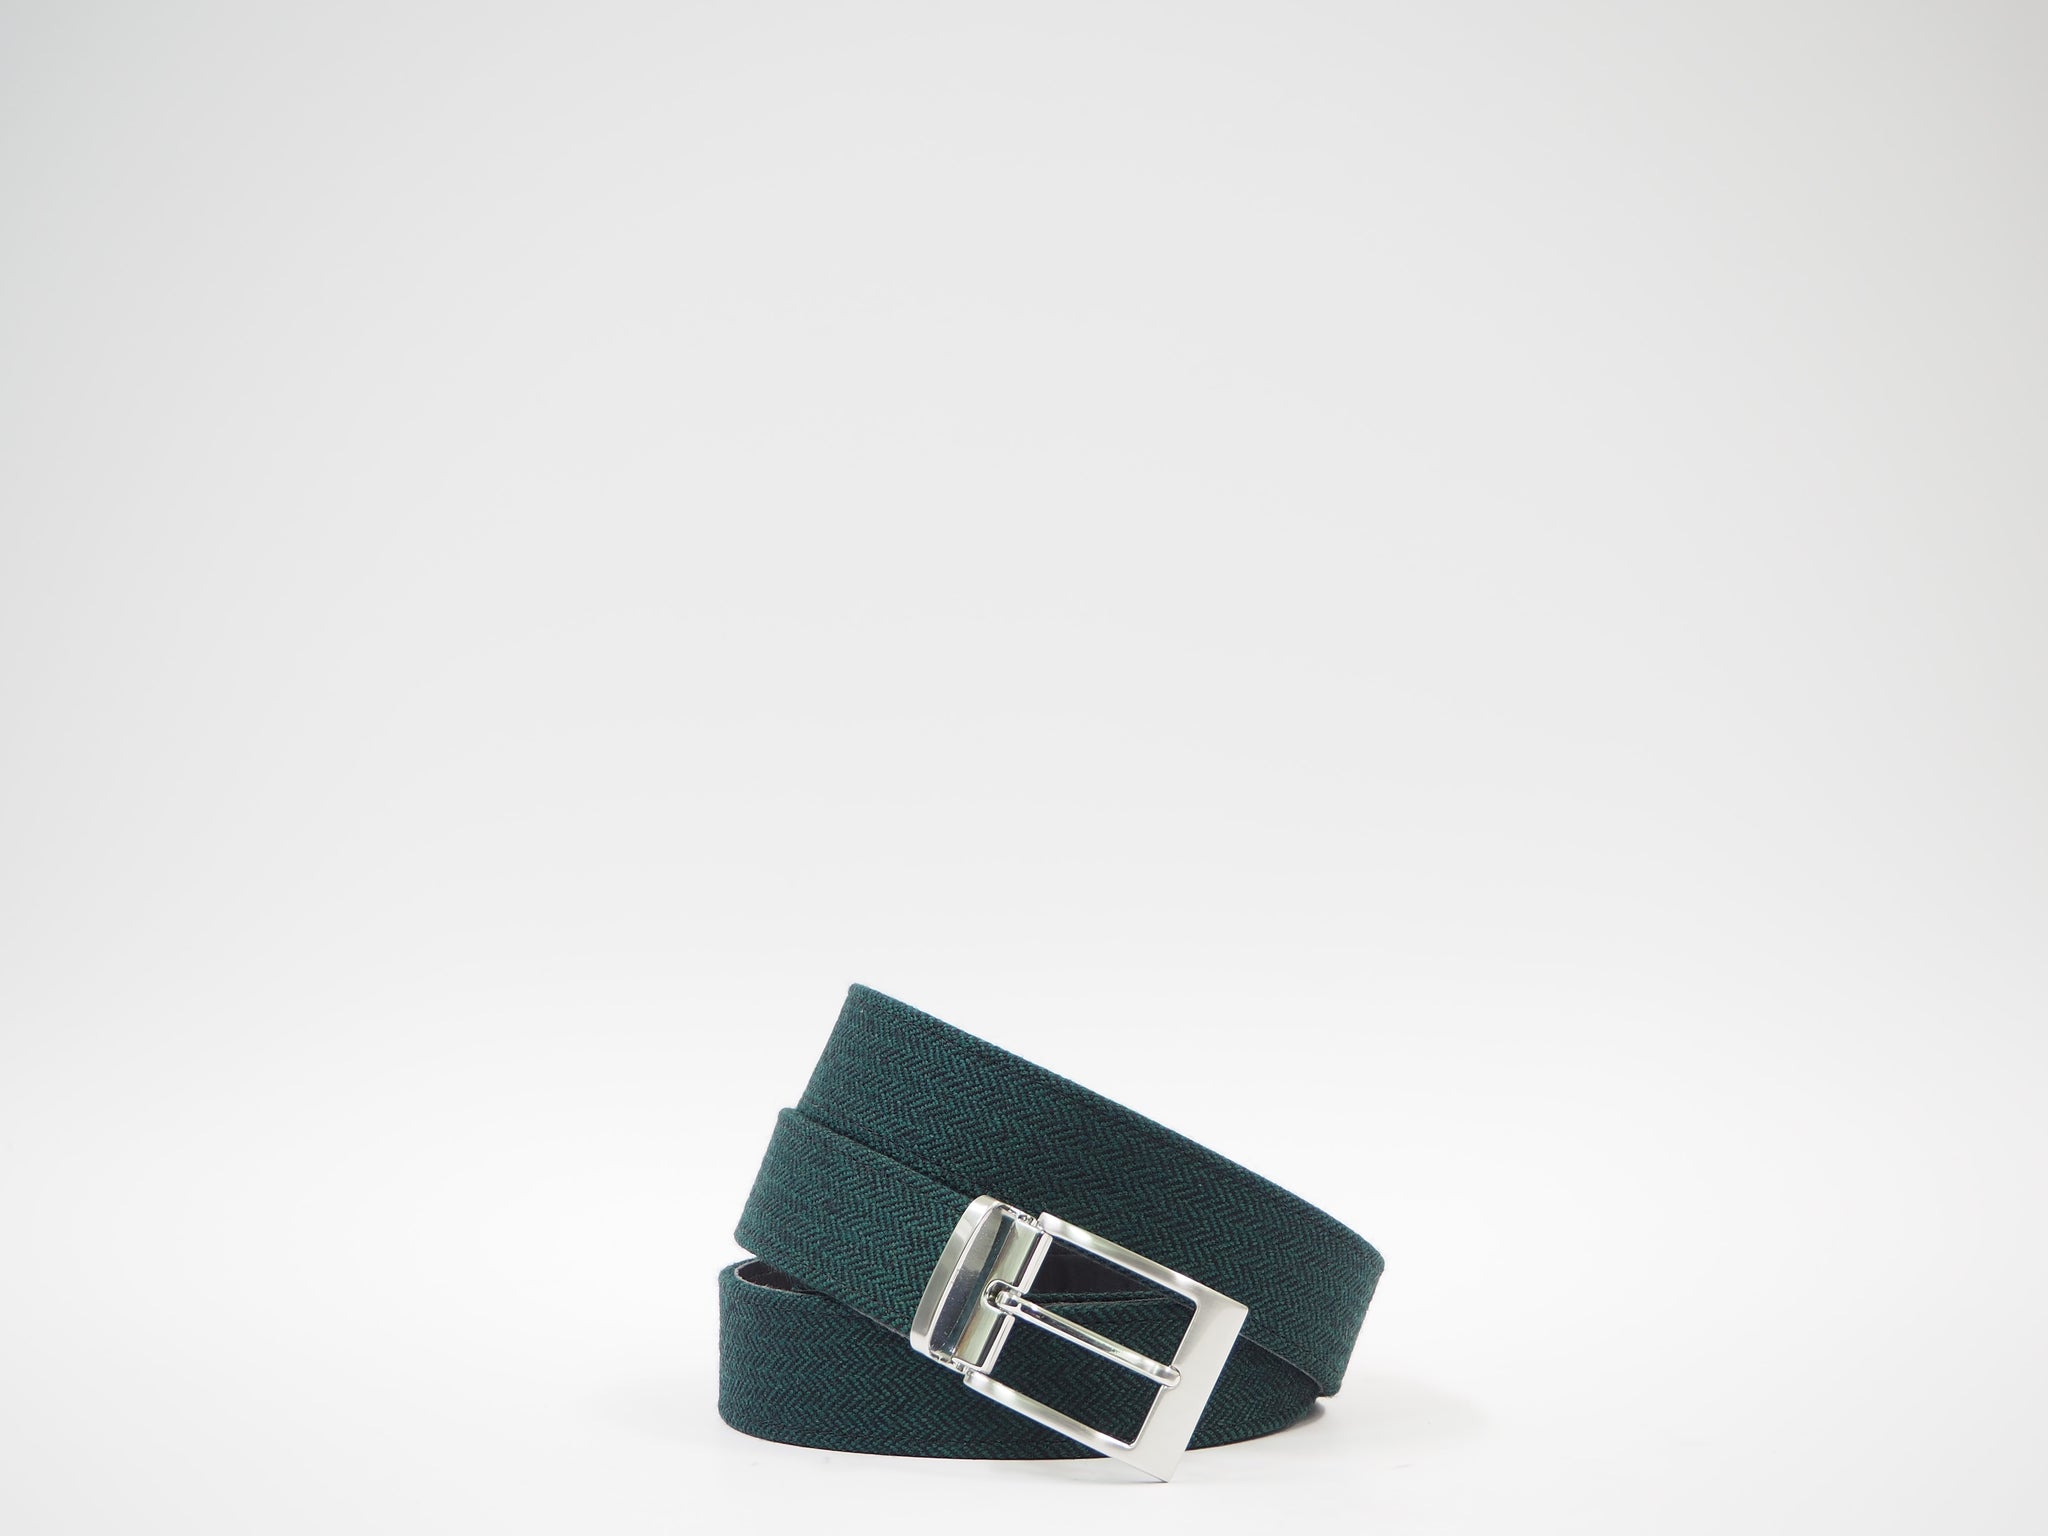 Size 41 - Green & Black Herringbone Oxford + Belt